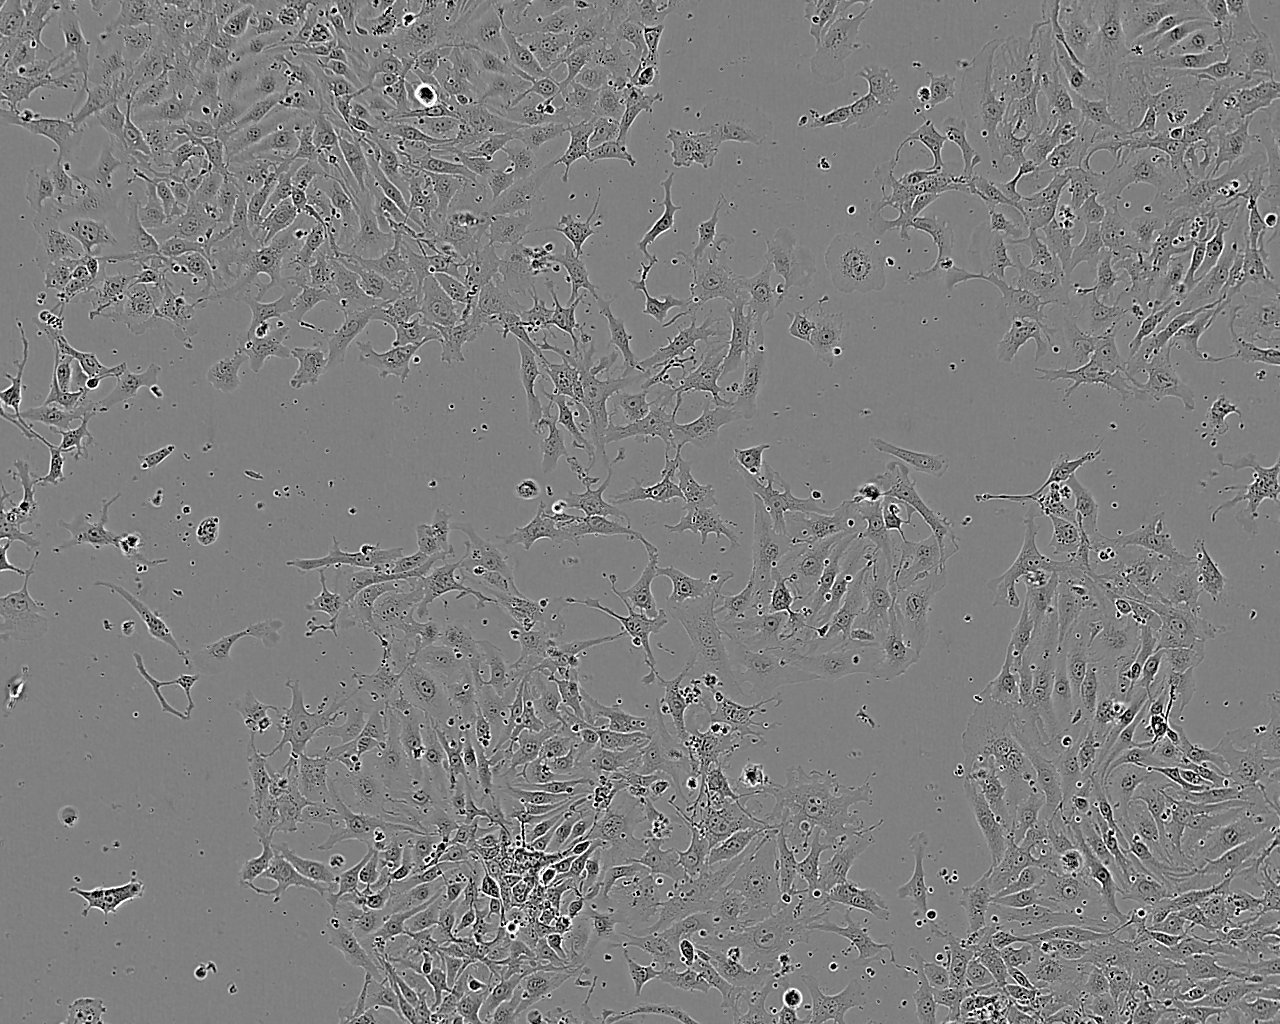 HCC2279 epithelioid cells人肺腺鳞癌细胞系,HCC2279 epithelioid cells